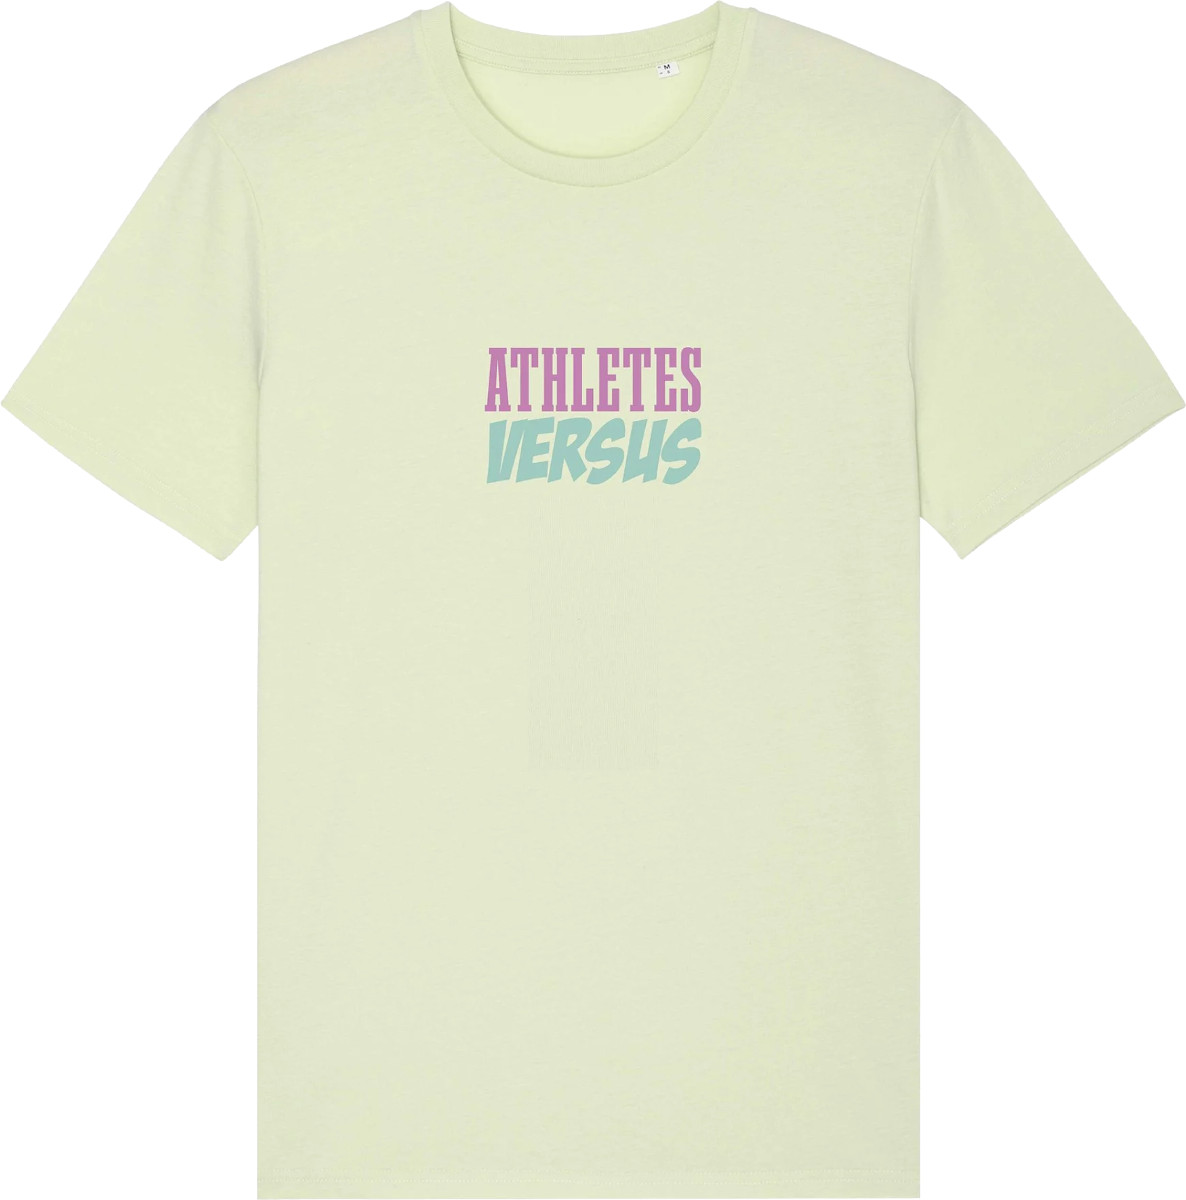 Tee-shirt ATHLETESVERSUS AthletesVS 